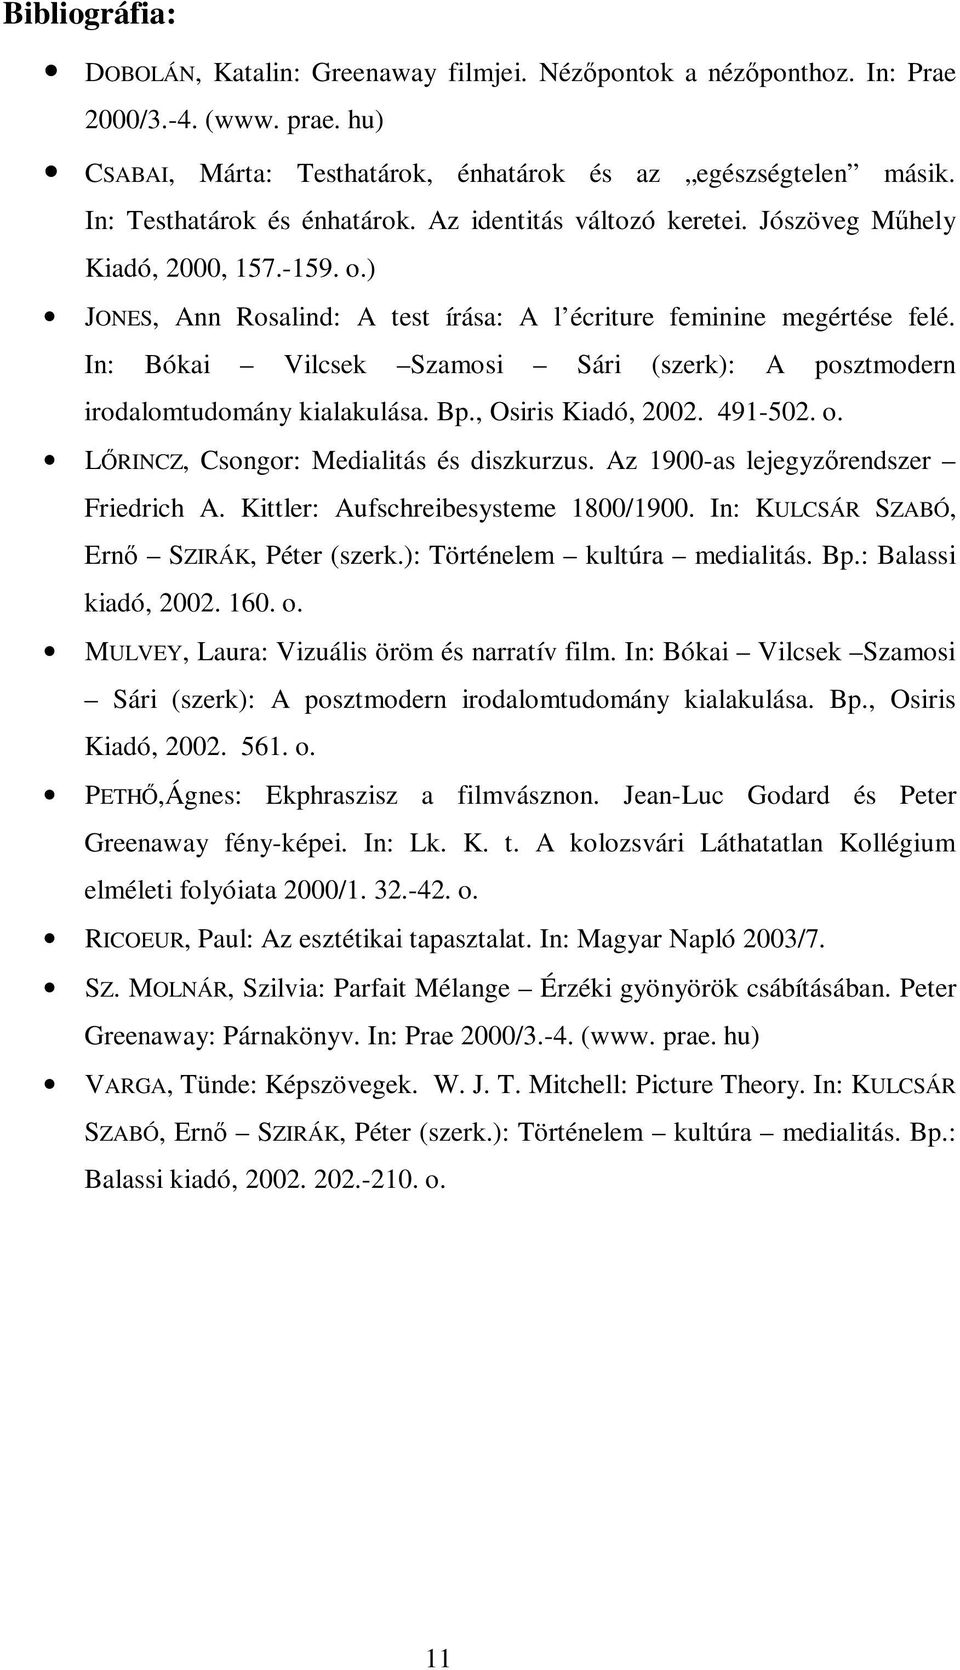 In: Bókai Vilcsek Szamosi Sári (szerk): A posztmodern irodalomtudomány kialakulása. Bp., Osiris Kiadó, 2002. 491-502. o. LRINCZ, Csongor: Medialitás és diszkurzus.